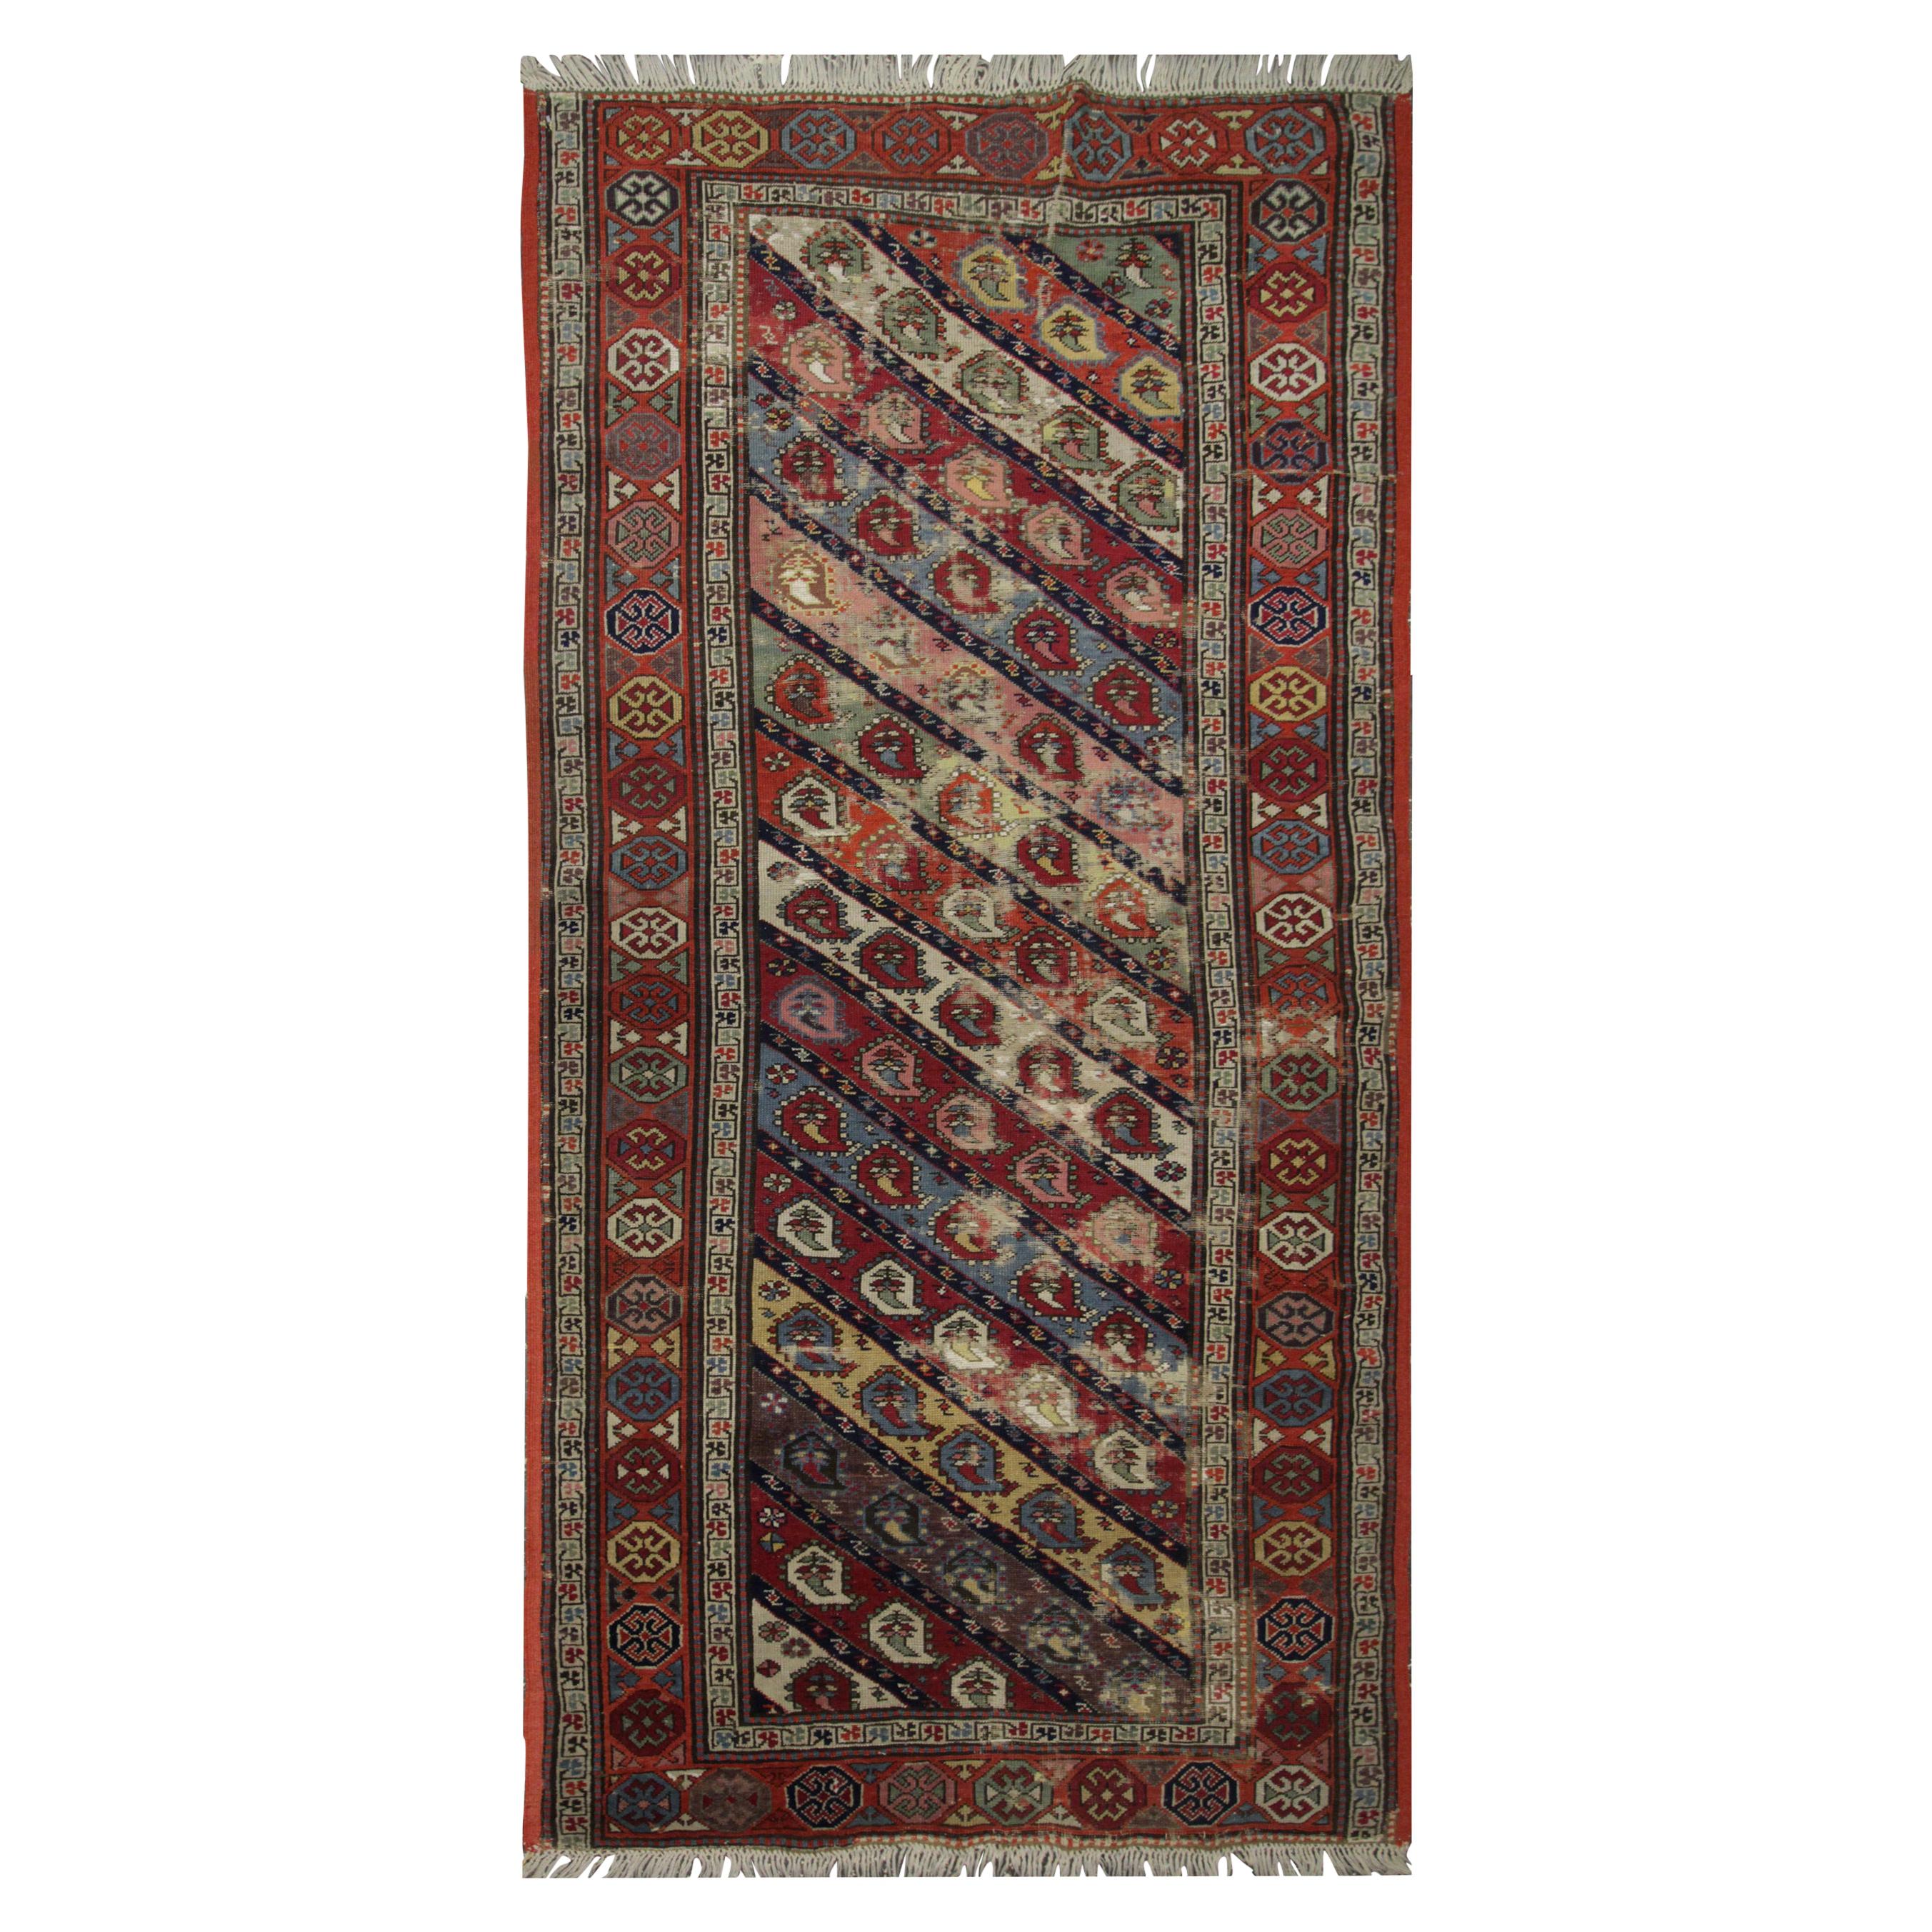 Handgewebter traditioneller kaukasischer Teppich, Teppich aus roter Wolle mit Paisleymuster